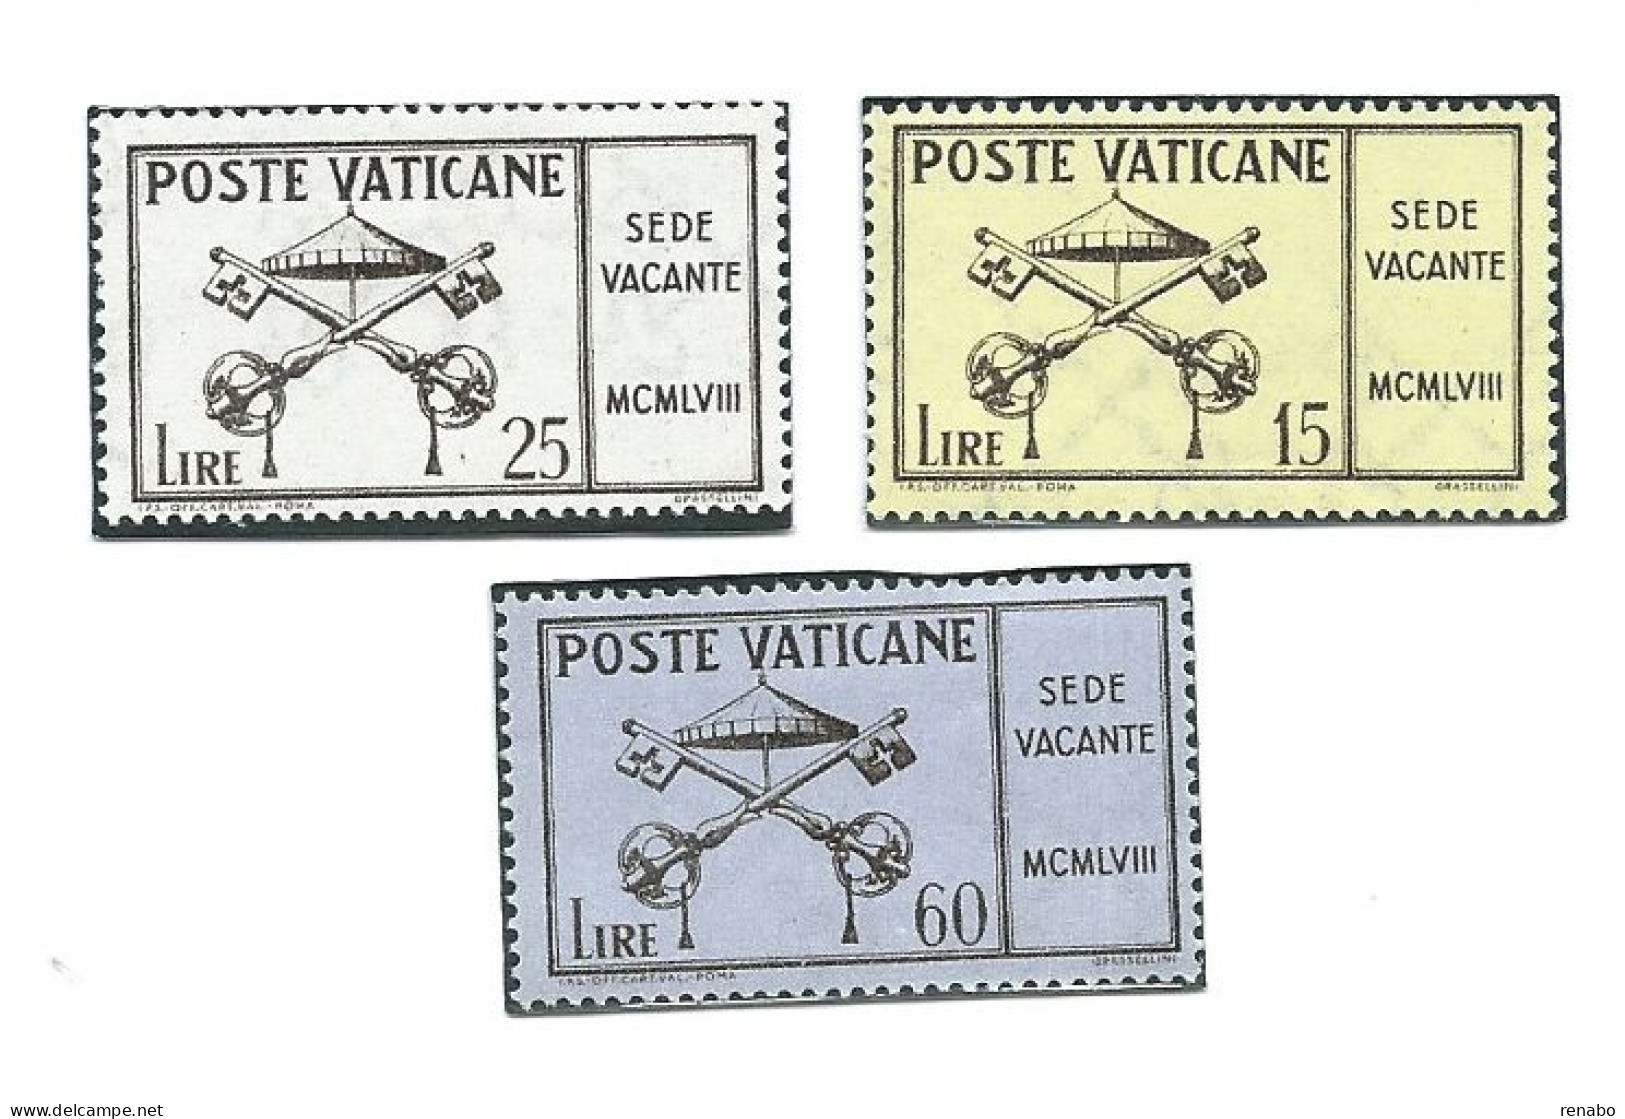 Vaticano 1958 ; Sede Vacante. Serie Completa, Nuova. - Nuovi